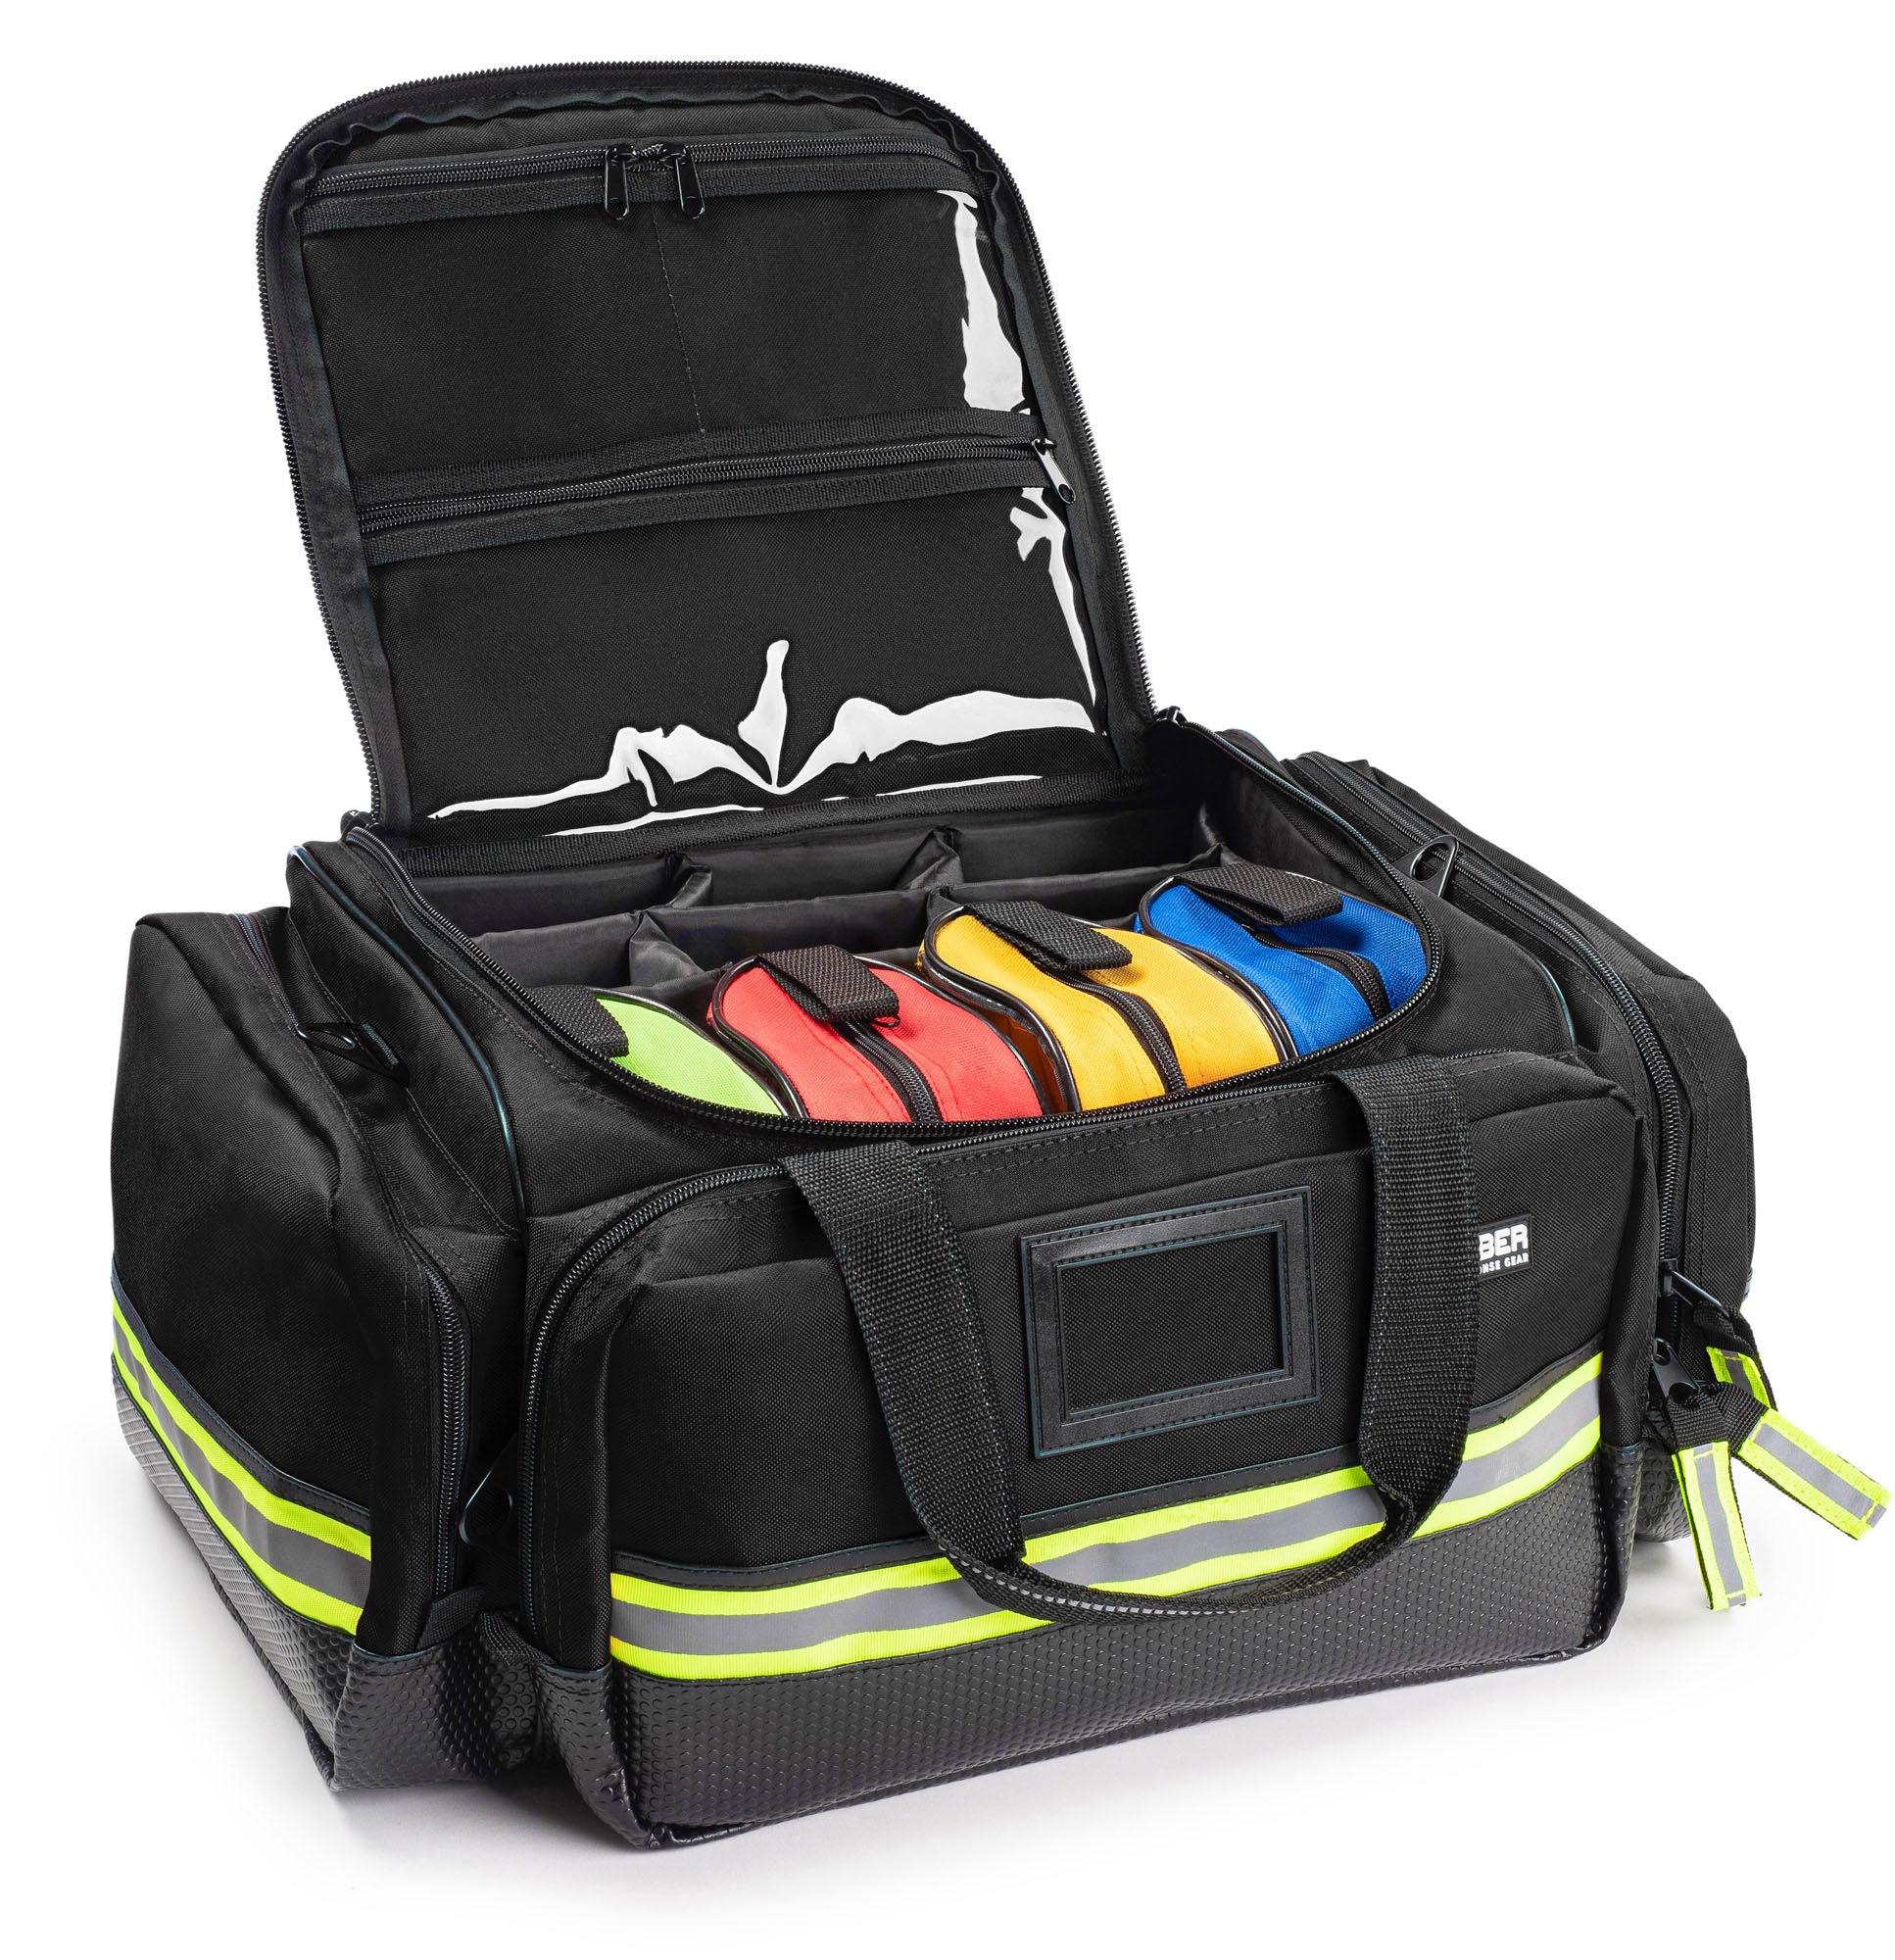 Scherber First Responder Bag | Professional Advanced EMT/EMS Trauma Bag